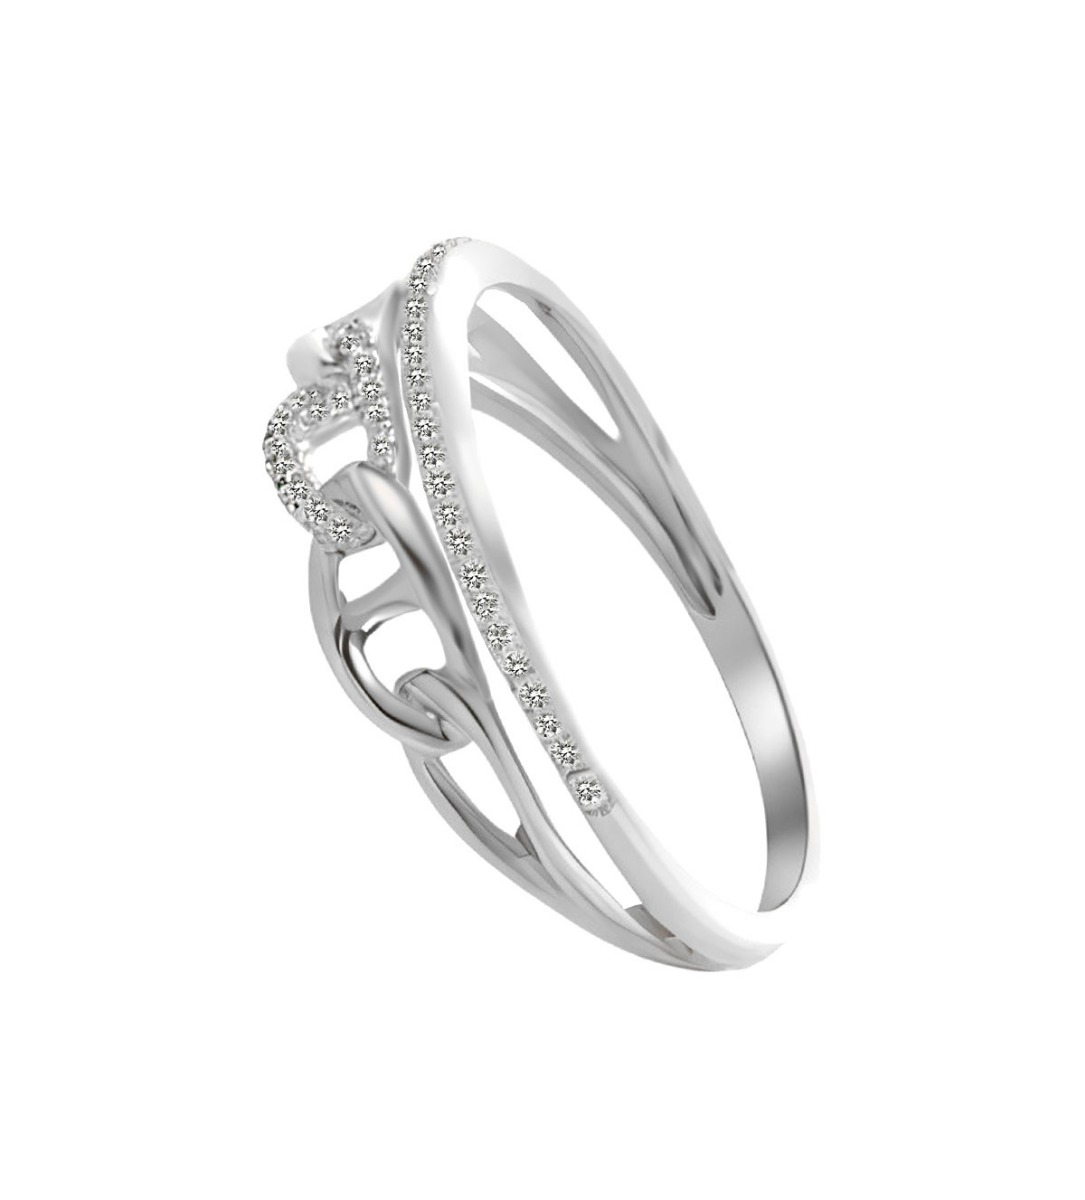 anillo oro blanco 18 ktes con diamantes modelo cadena calabrote toma lateral para web